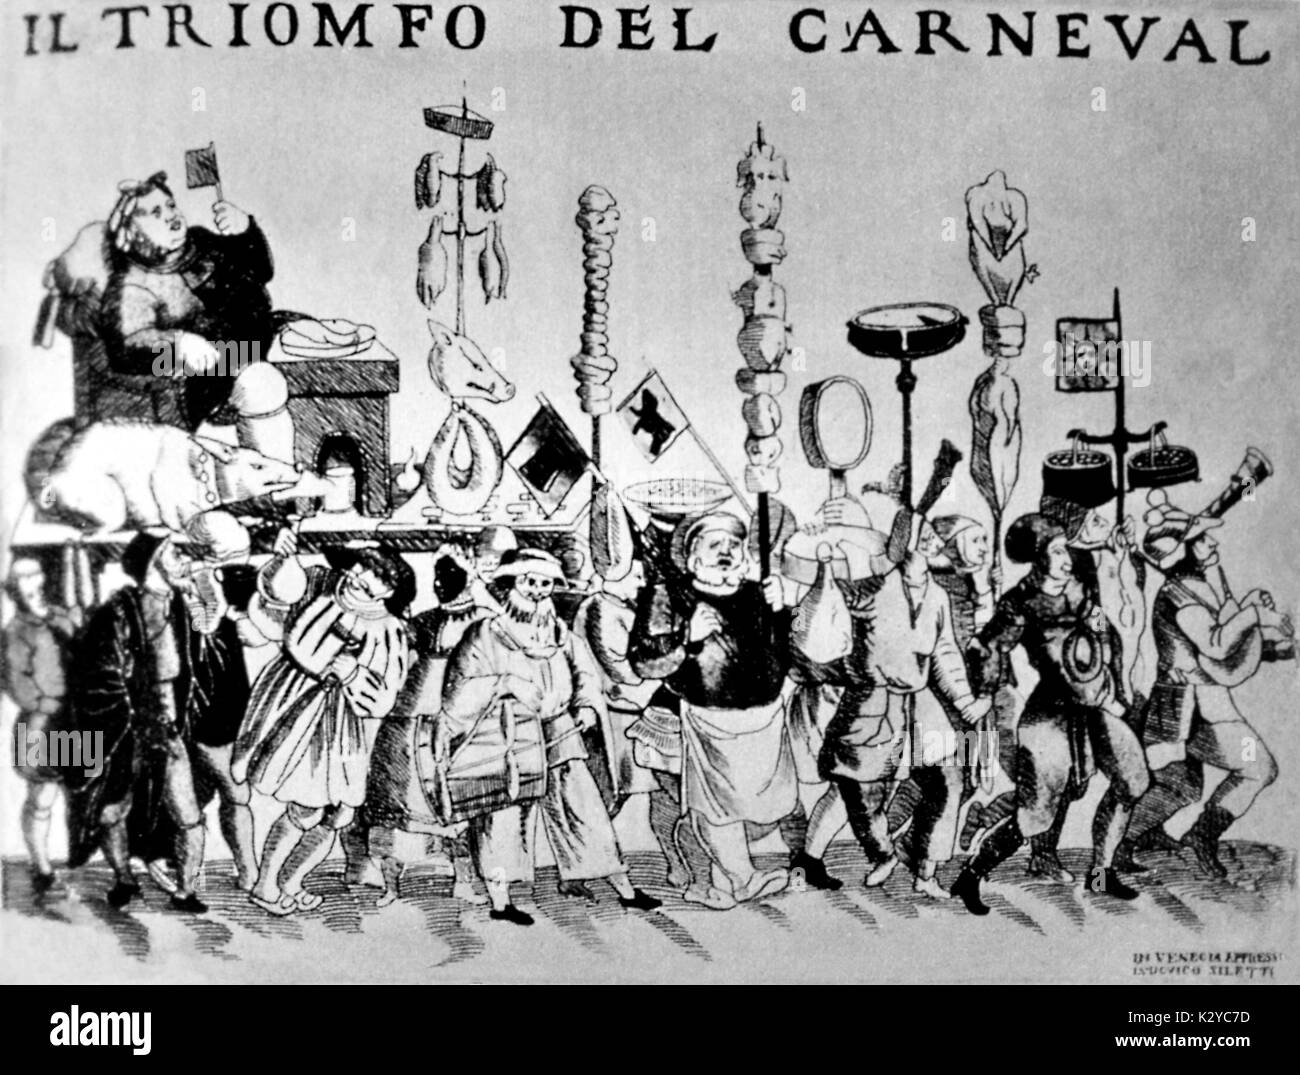 Venecia - Folleto - carnaval veneciano Il trionfo del Carnaval (el triunfo del carnaval). Foto de stock